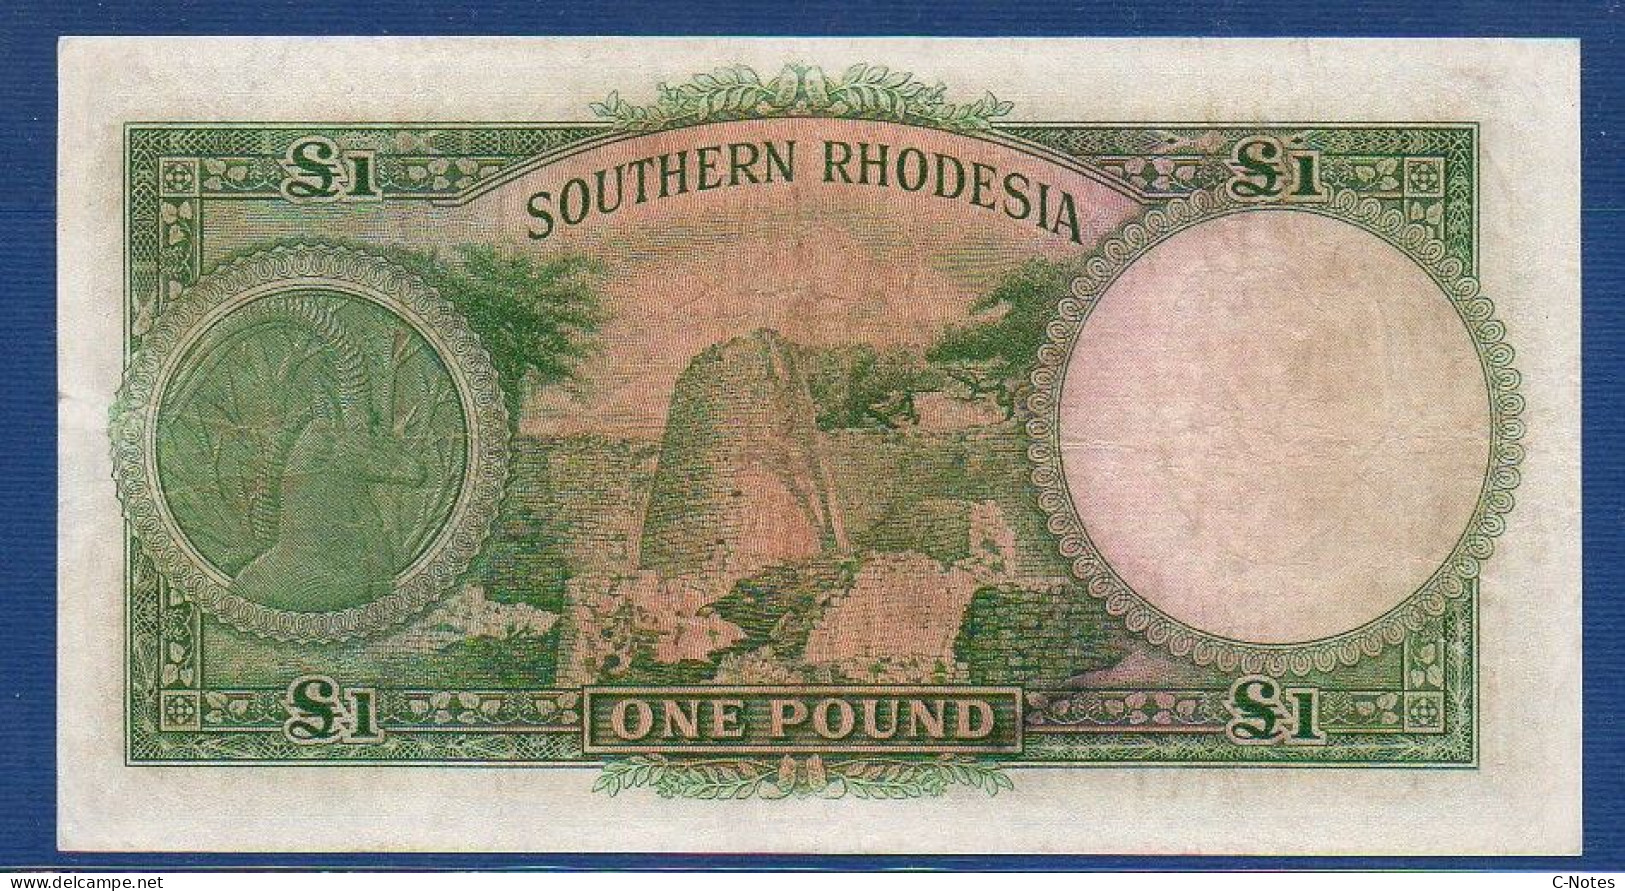 1979, BERMUDA 1 DOLLAR BANKNOTE, CIRCULATED